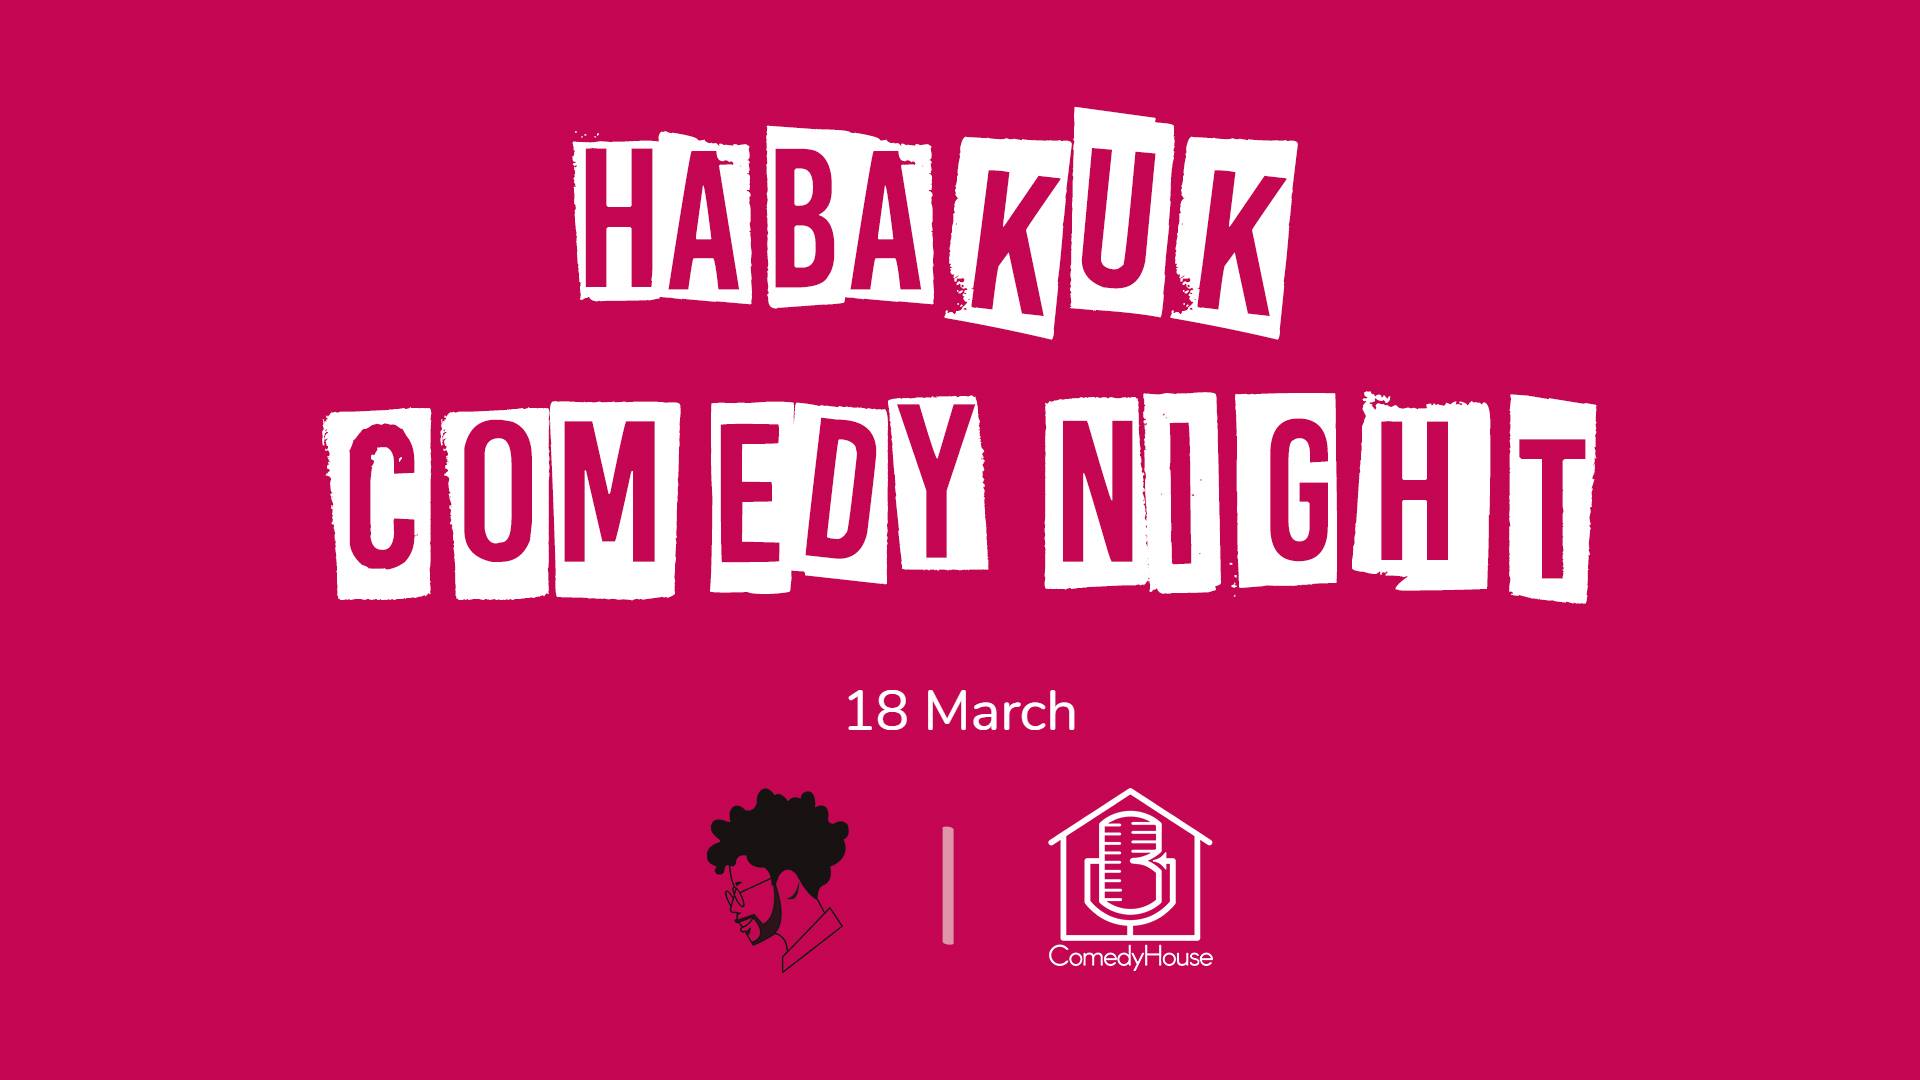 Habakuk Comedy Night